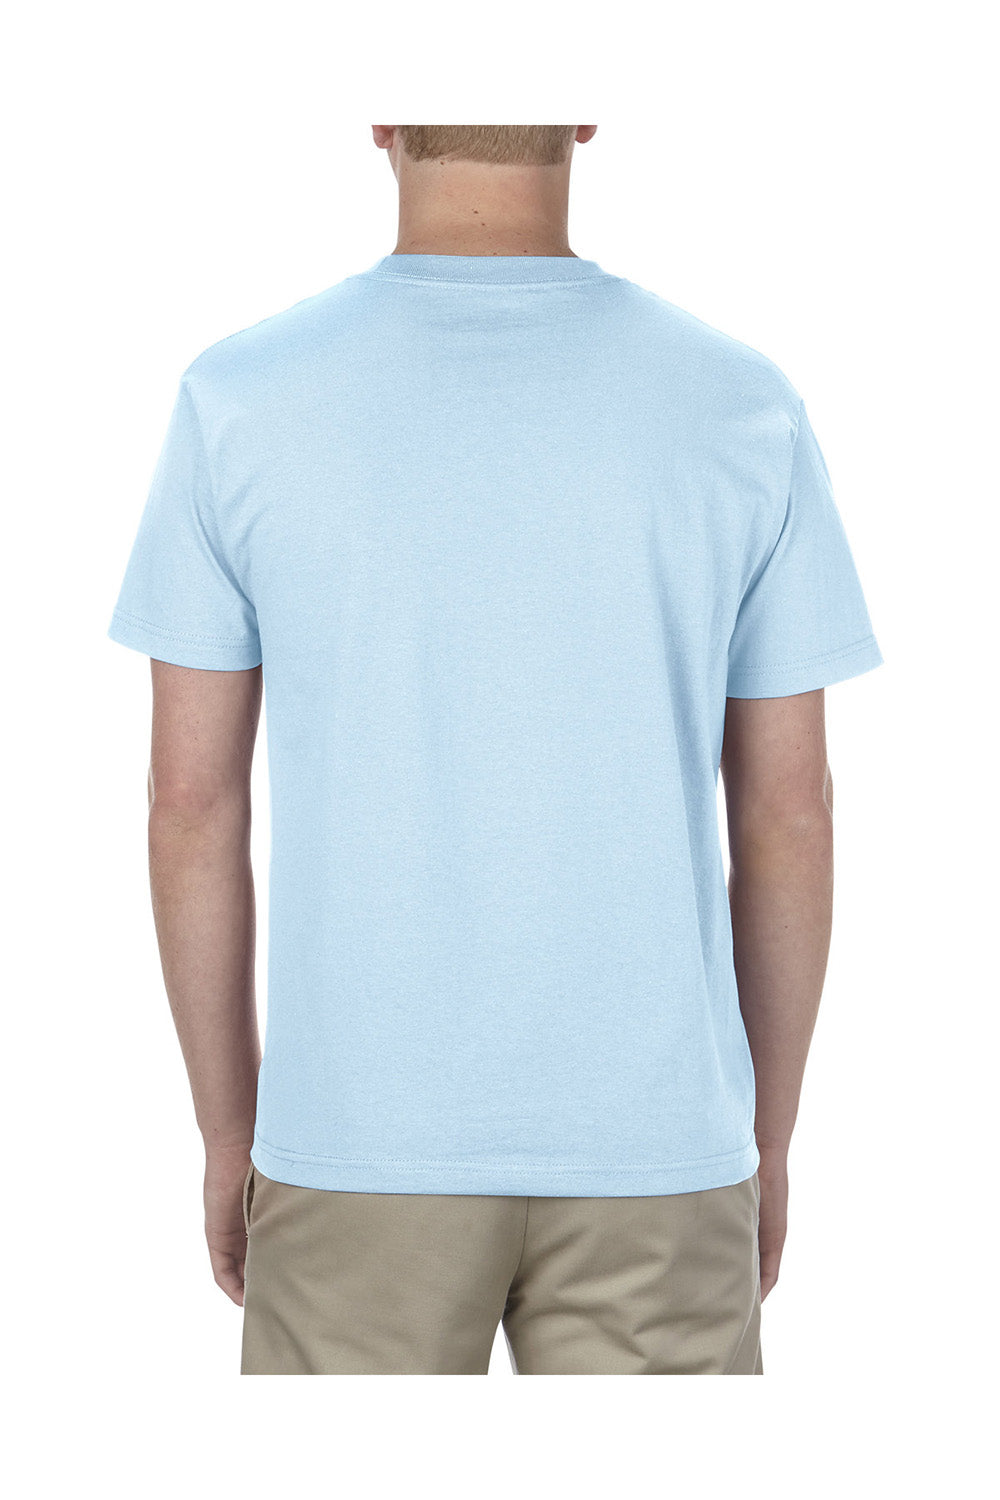 American Apparel 1301/AL1301 Mens Short Sleeve Crewneck T-Shirt Powder Blue Model Back